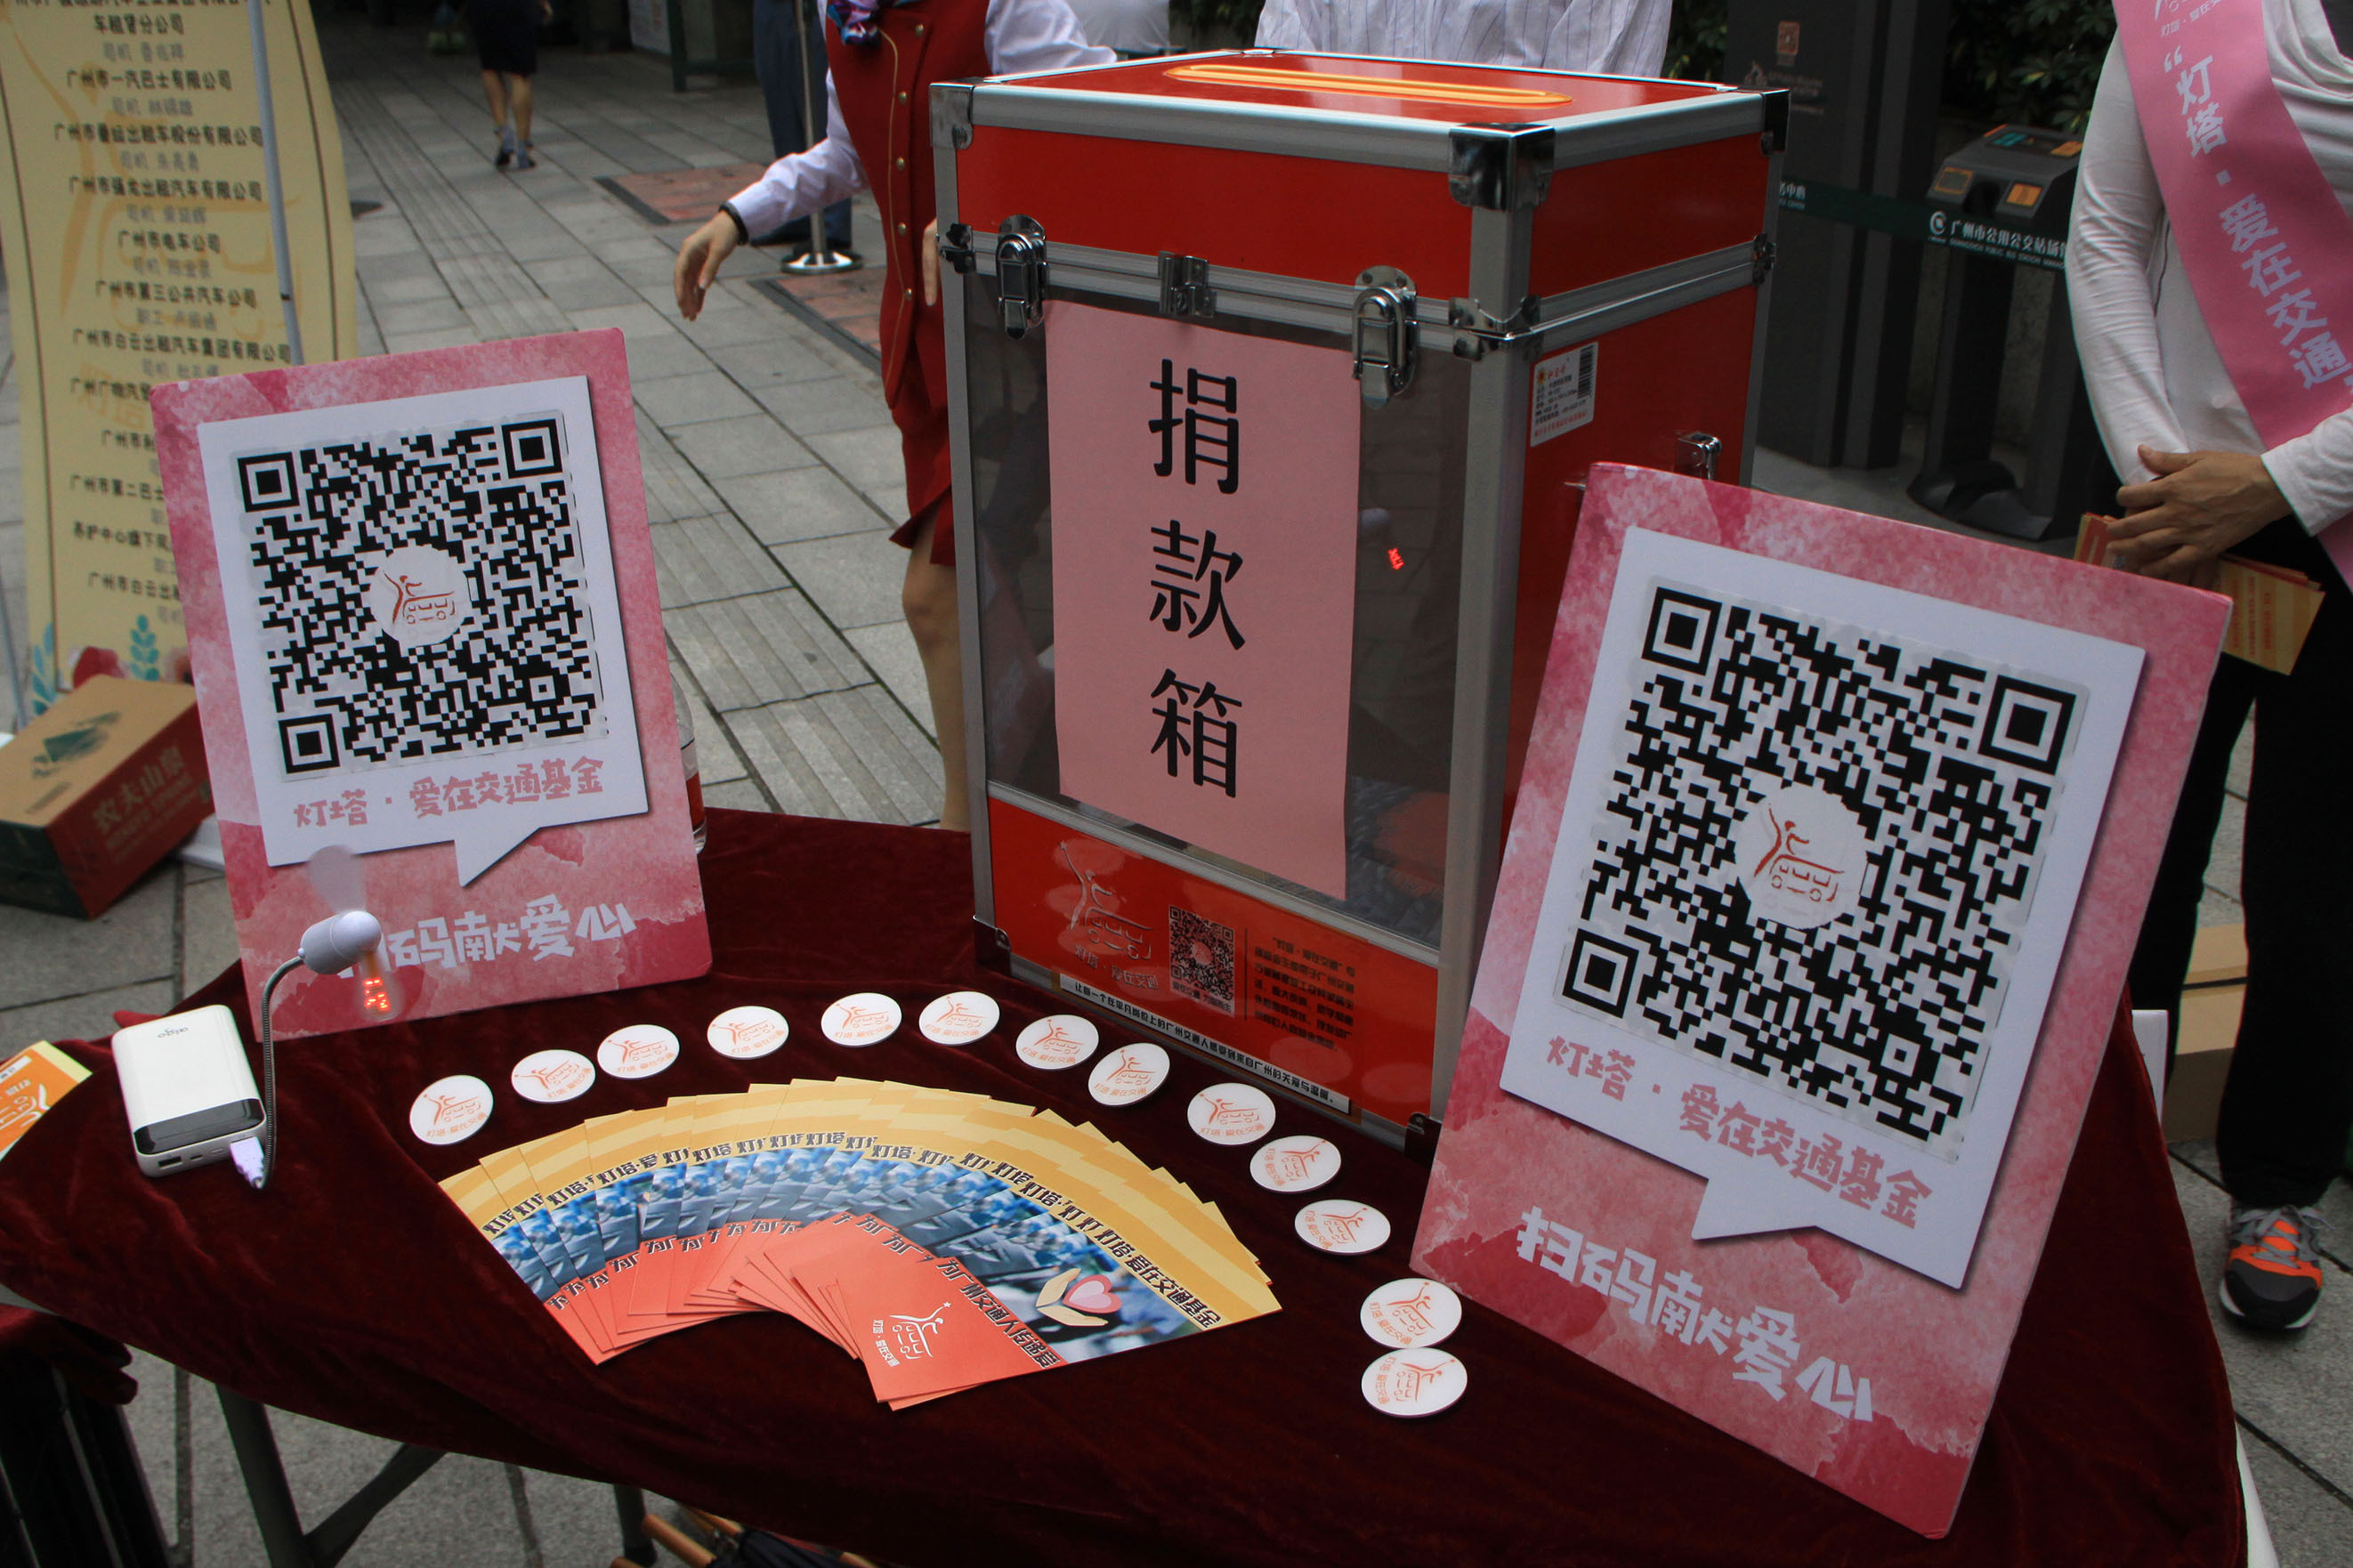 广州公交现爱心二维码,扫码即可为困难交通人捐款